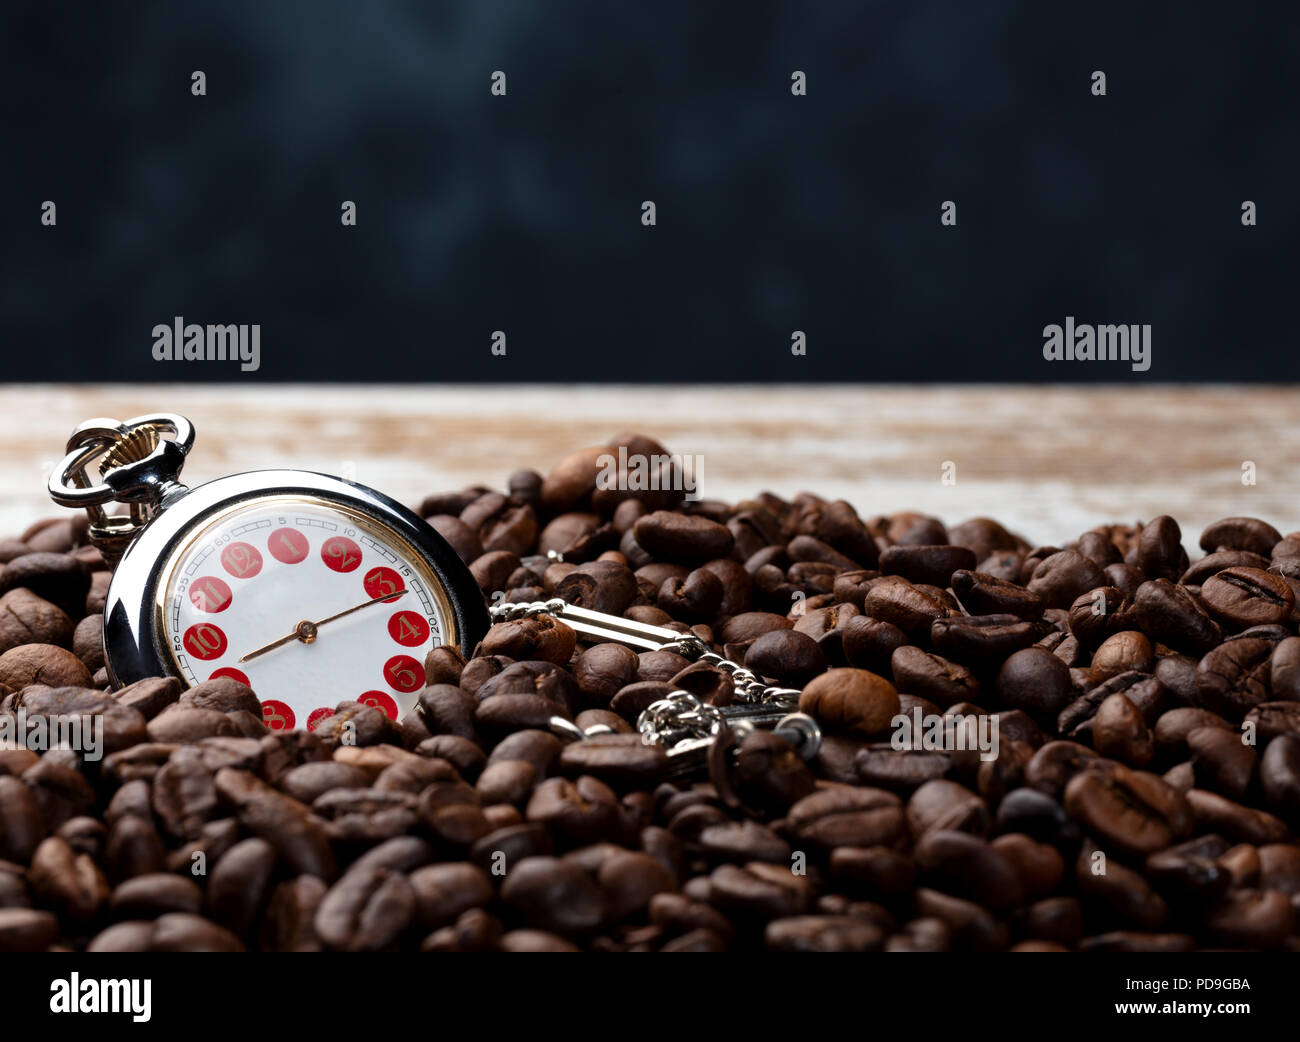 Eine Menge Kaffee Bohnen mit einer Hand auf einem abgenutzten braune Holztisch und blauen Hintergrund, coceptual Foto zeigt, dass es Zeit für einen guten Kaffee Stockfoto